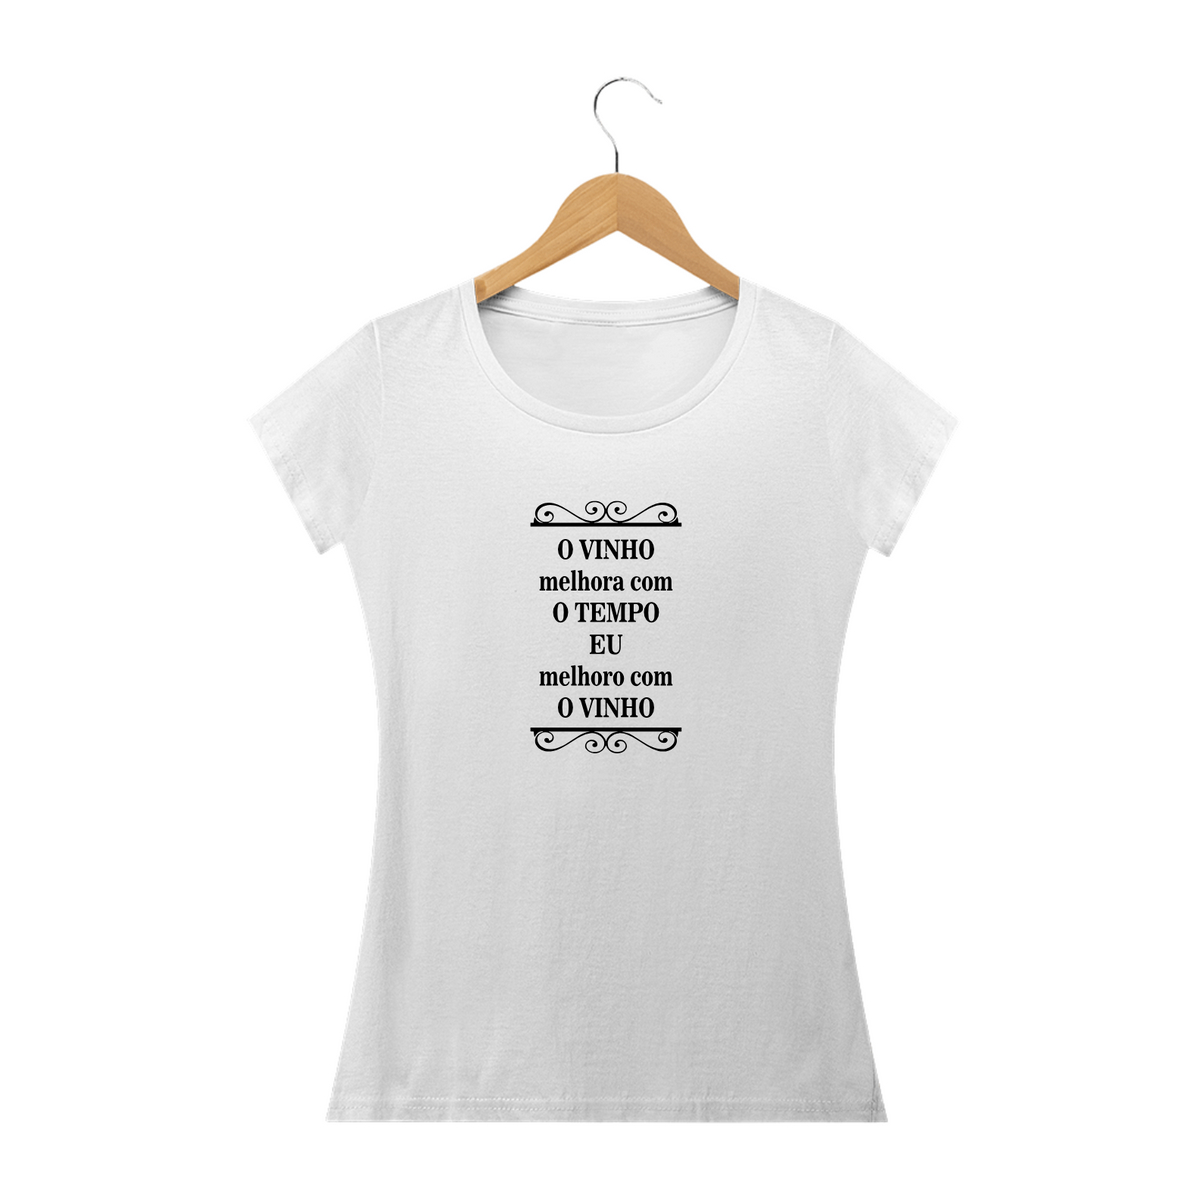 Nome do produto: O VINHO MELHORA COM O TEMPO - Camiseta Feminina Personalizada com Estampa de Frases